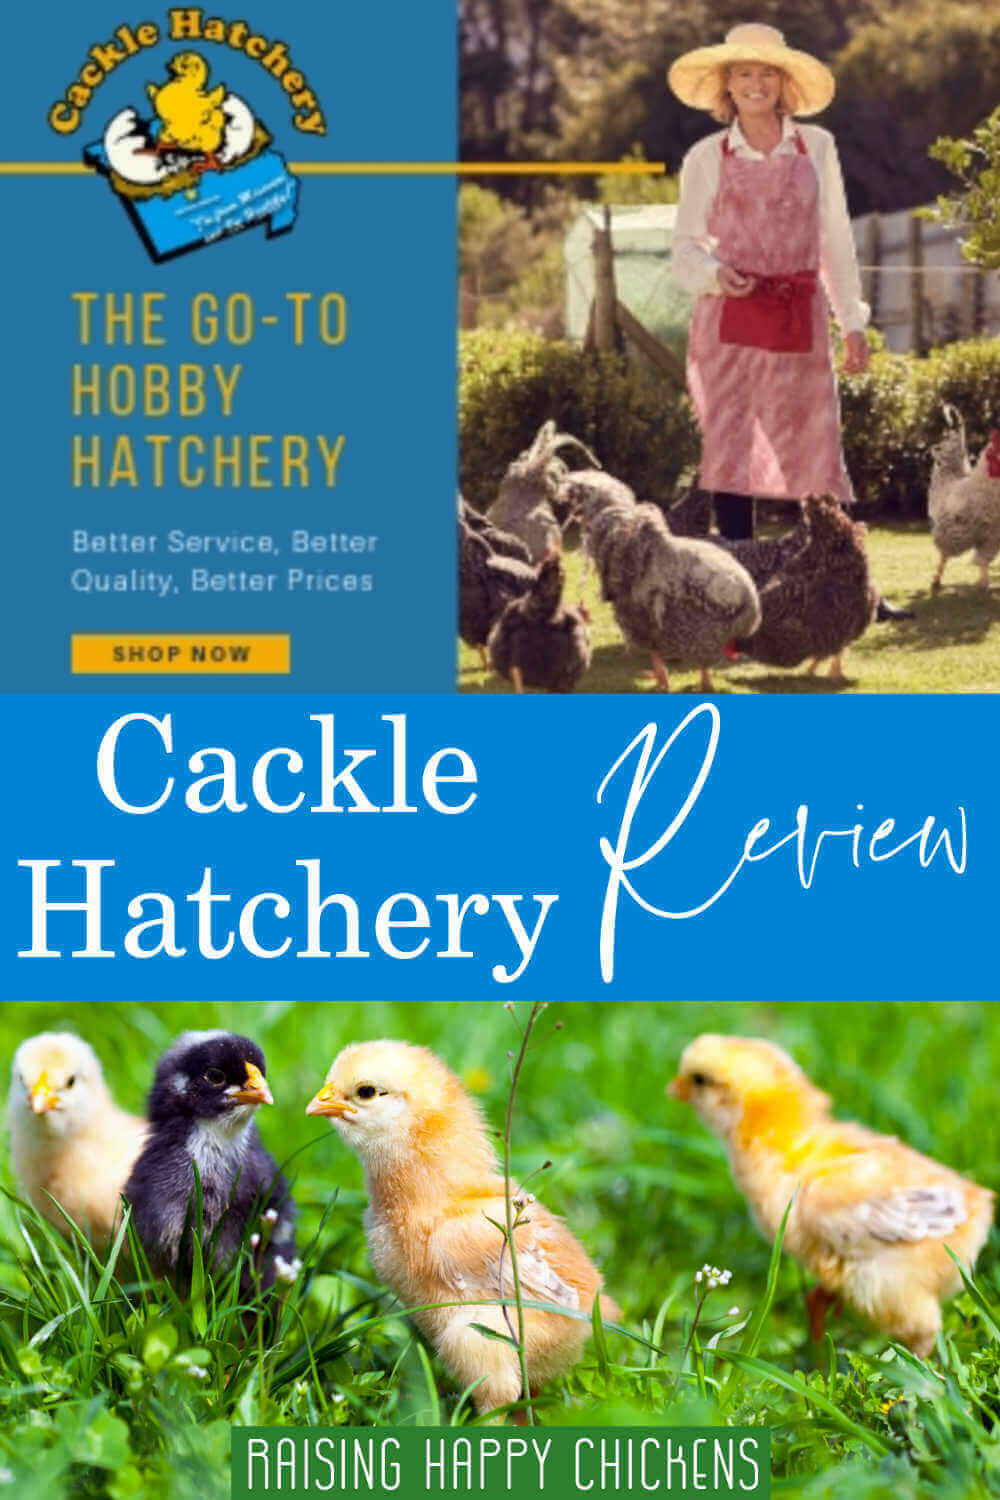 chick hatchery near me